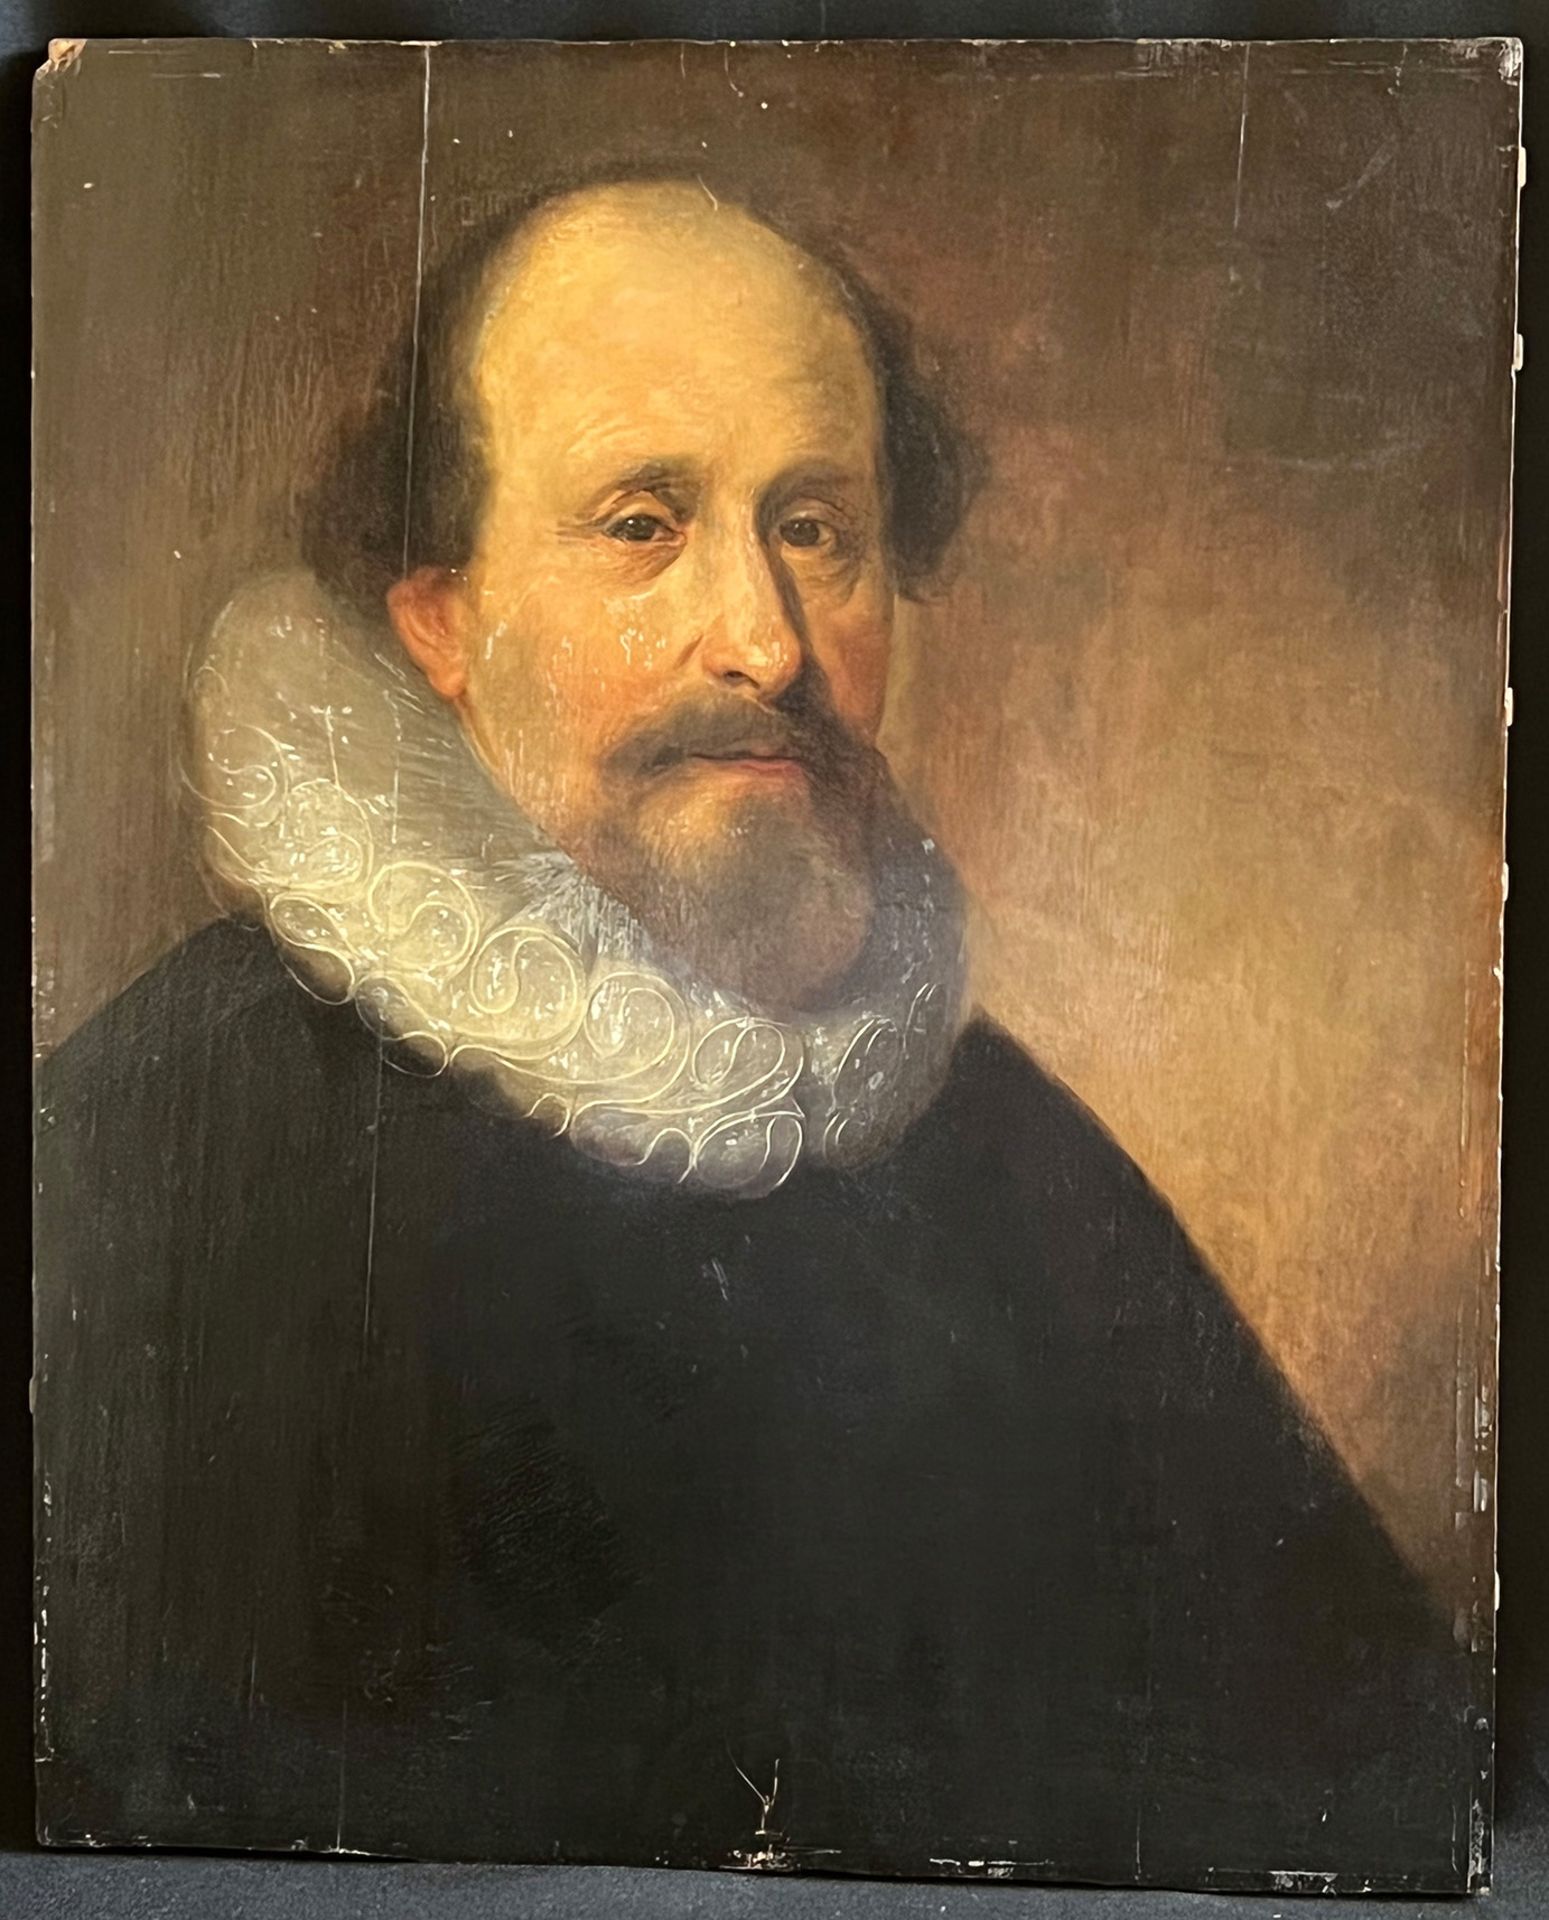 Unbekannter Künstler, Niederlande, 17./18. Jh., Portrait eines bärtigen Herrn mit Stirnglatze, in